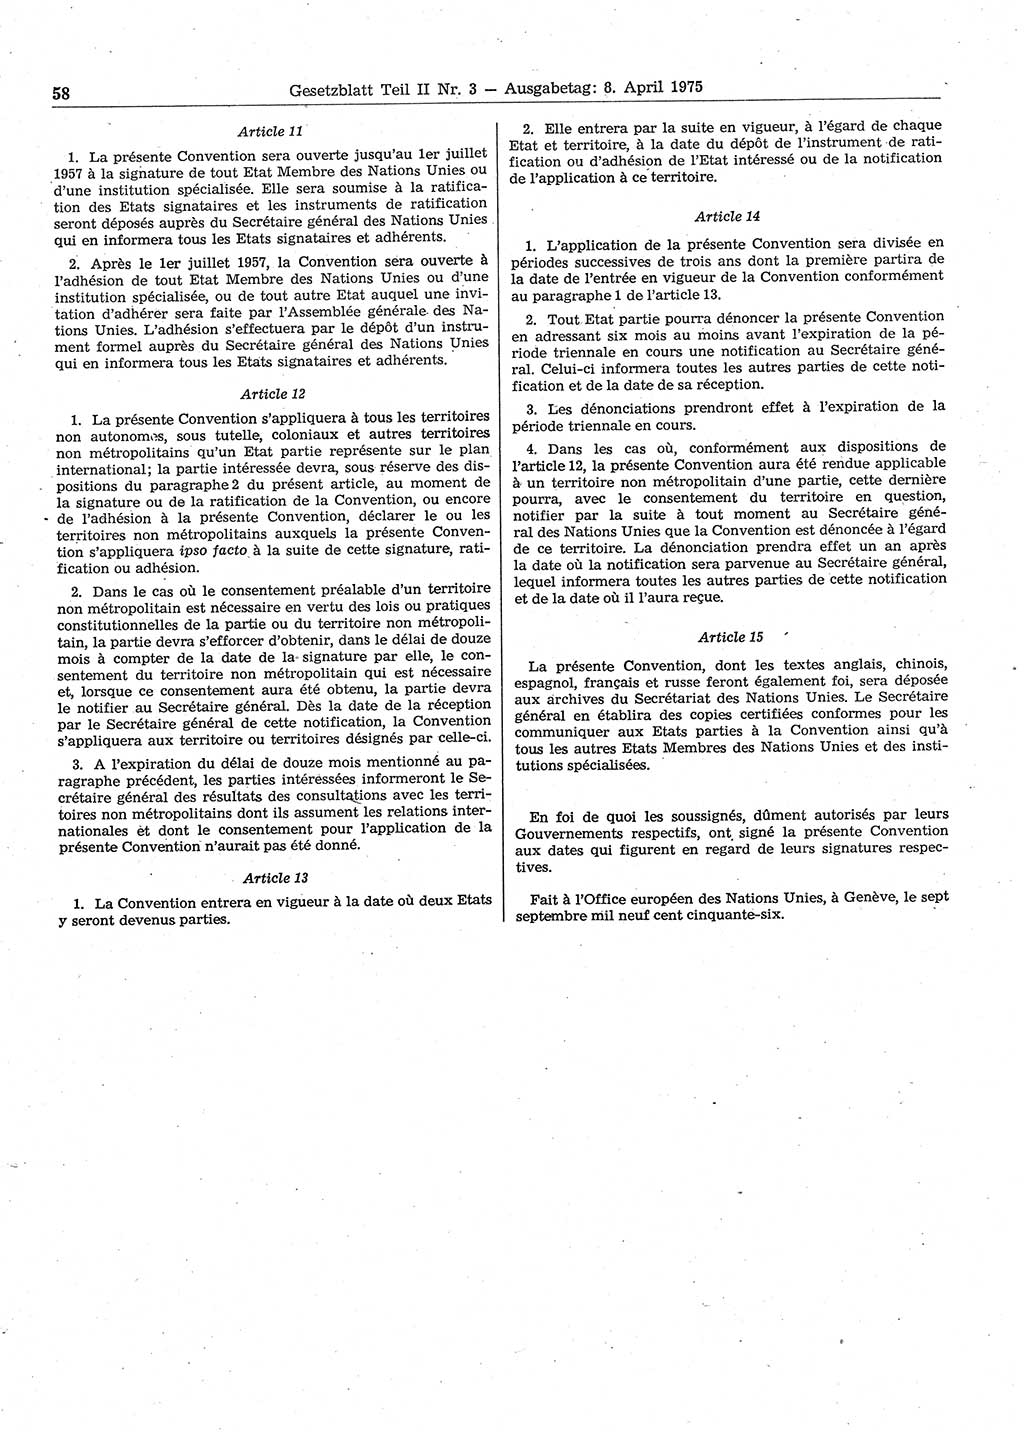 Gesetzblatt (GBl.) der Deutschen Demokratischen Republik (DDR) Teil ⅠⅠ 1975, Seite 58 (GBl. DDR ⅠⅠ 1975, S. 58)